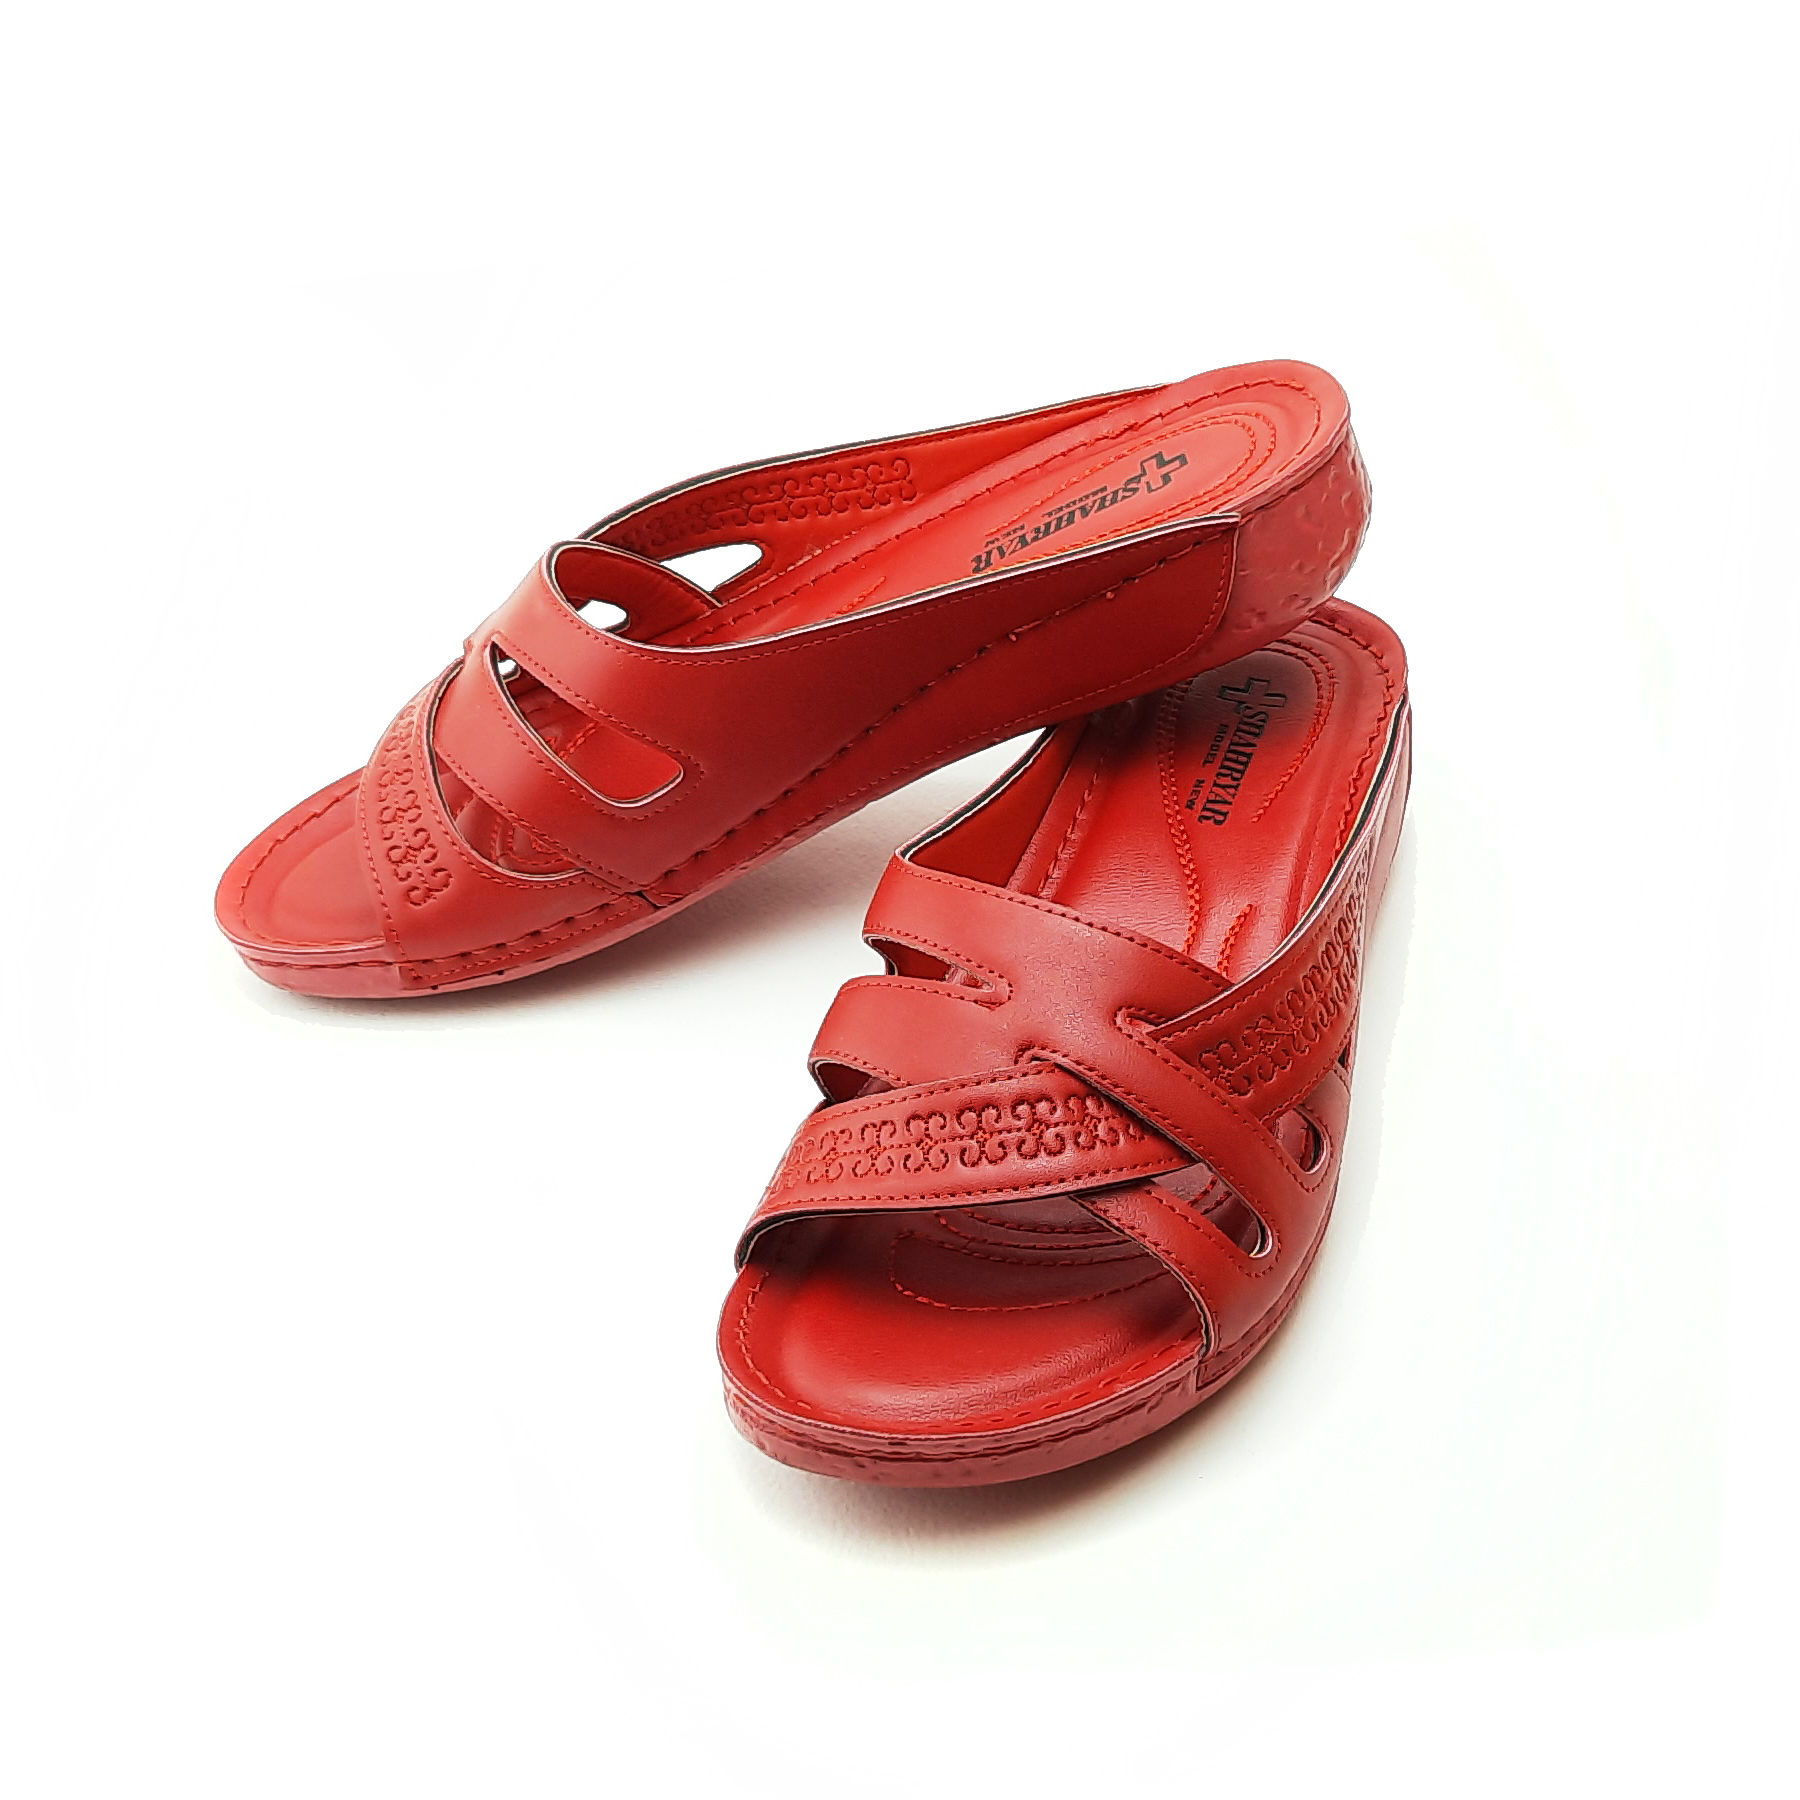 Buy "Aida" women's slippers | Code 1100121 